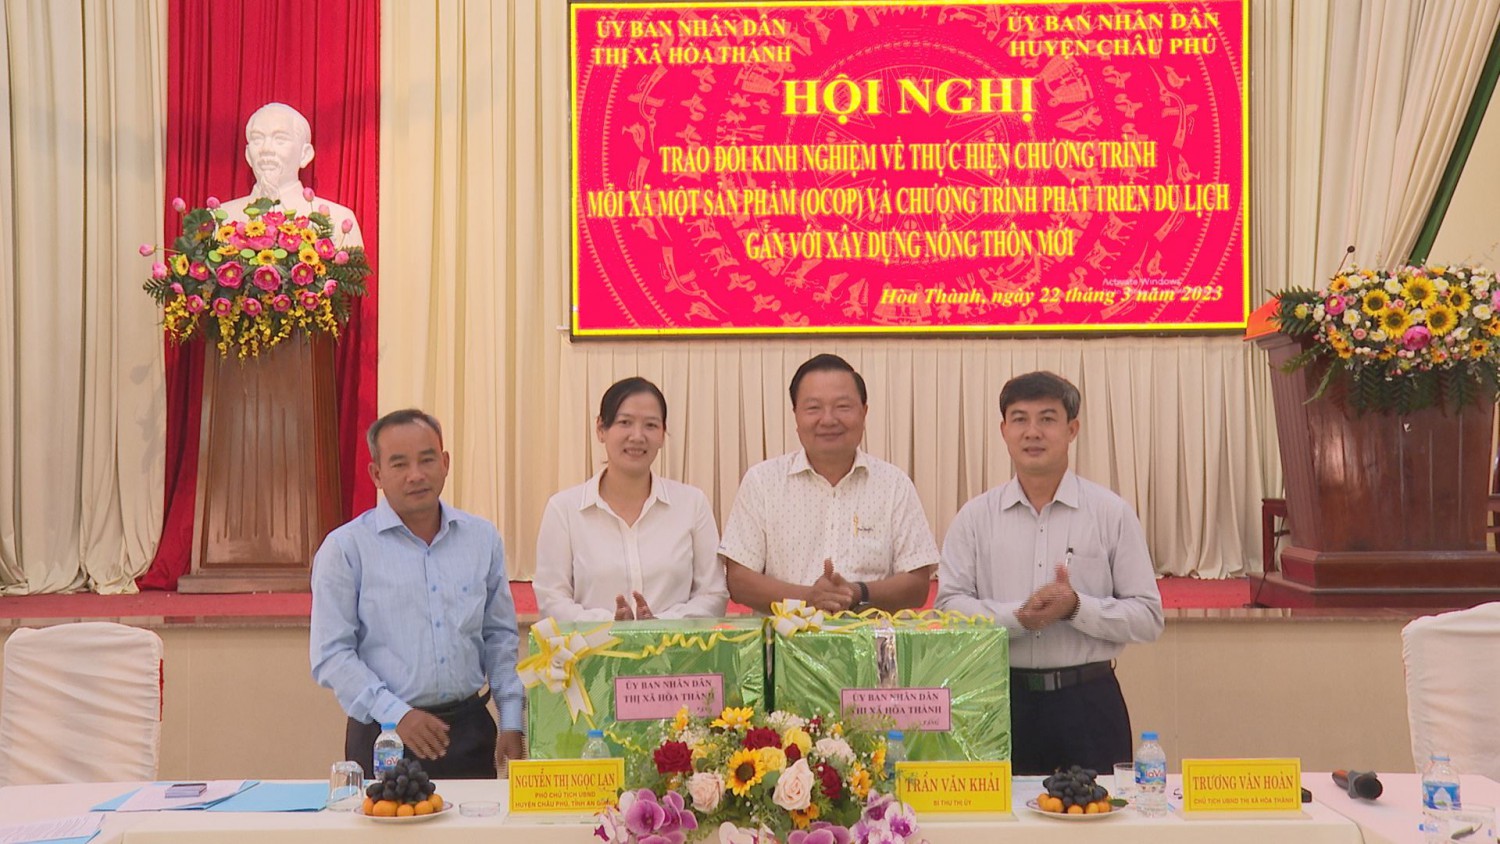 Thị xã Hoà Thành và huyện Châu Phú trao đổi kinh nghiệm triển khai Chương trình OCOP